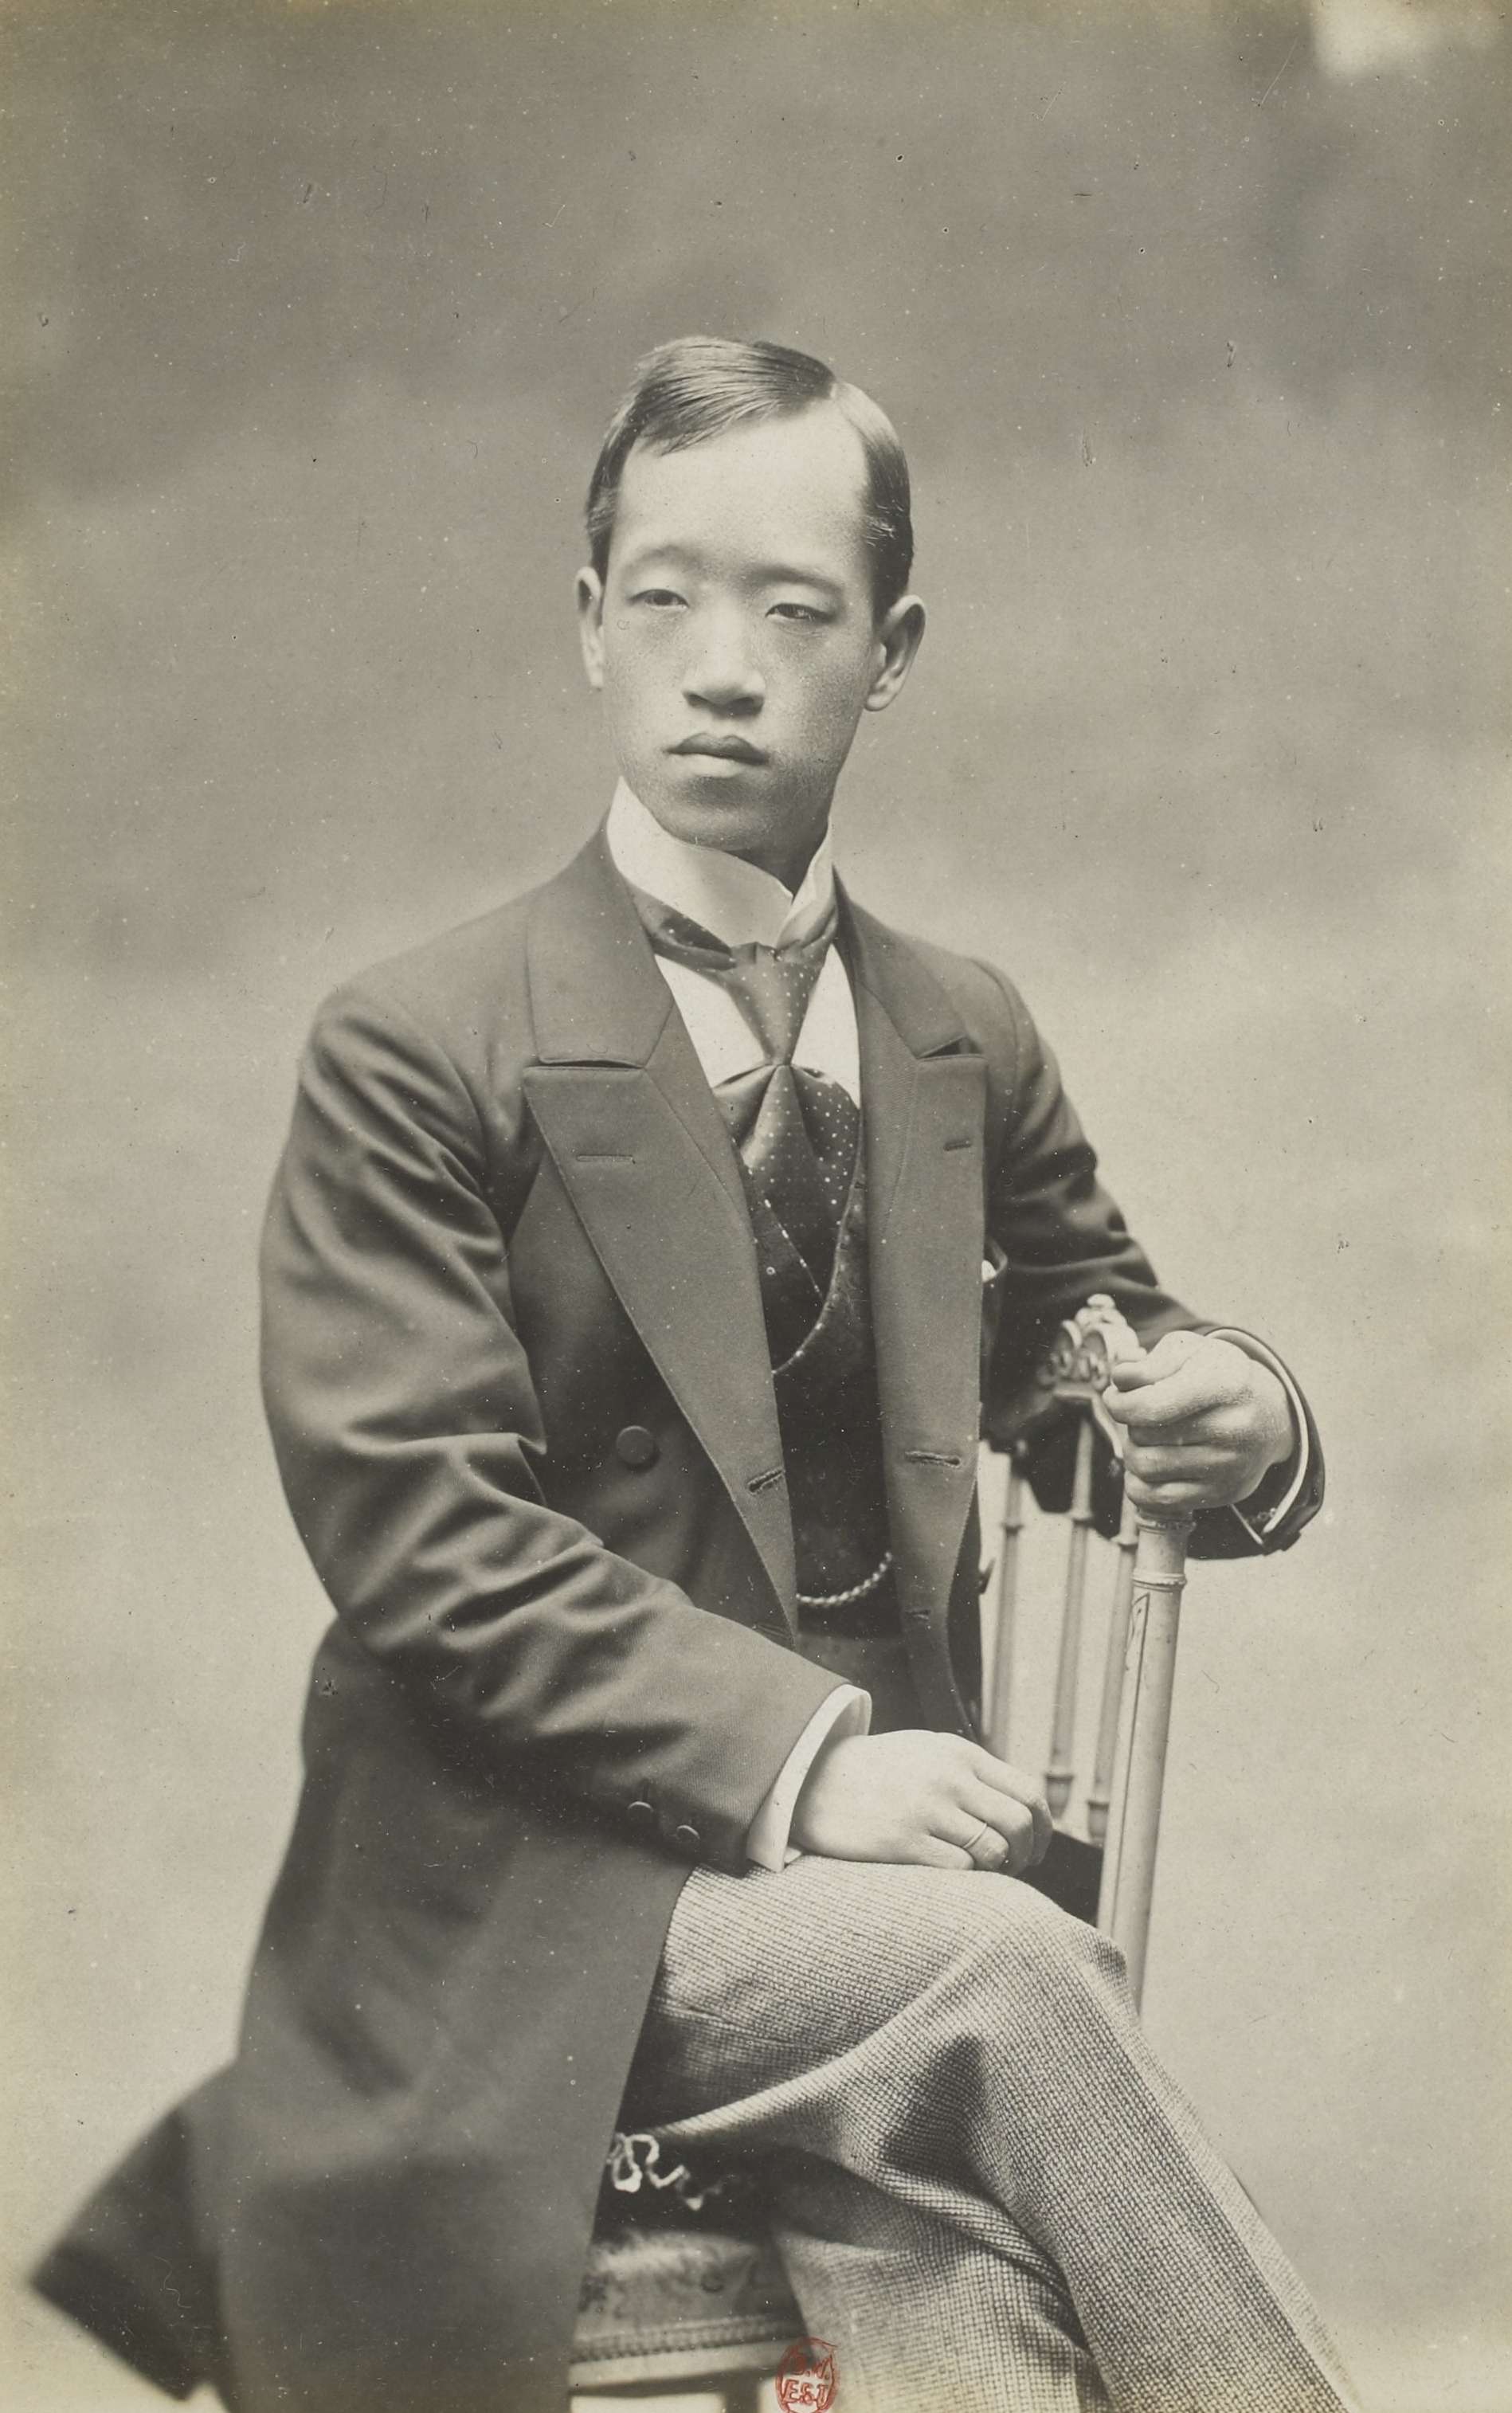 Exposition universelle de 1900 - portraits des commissaires généraux-Prince Min-Young-Chan